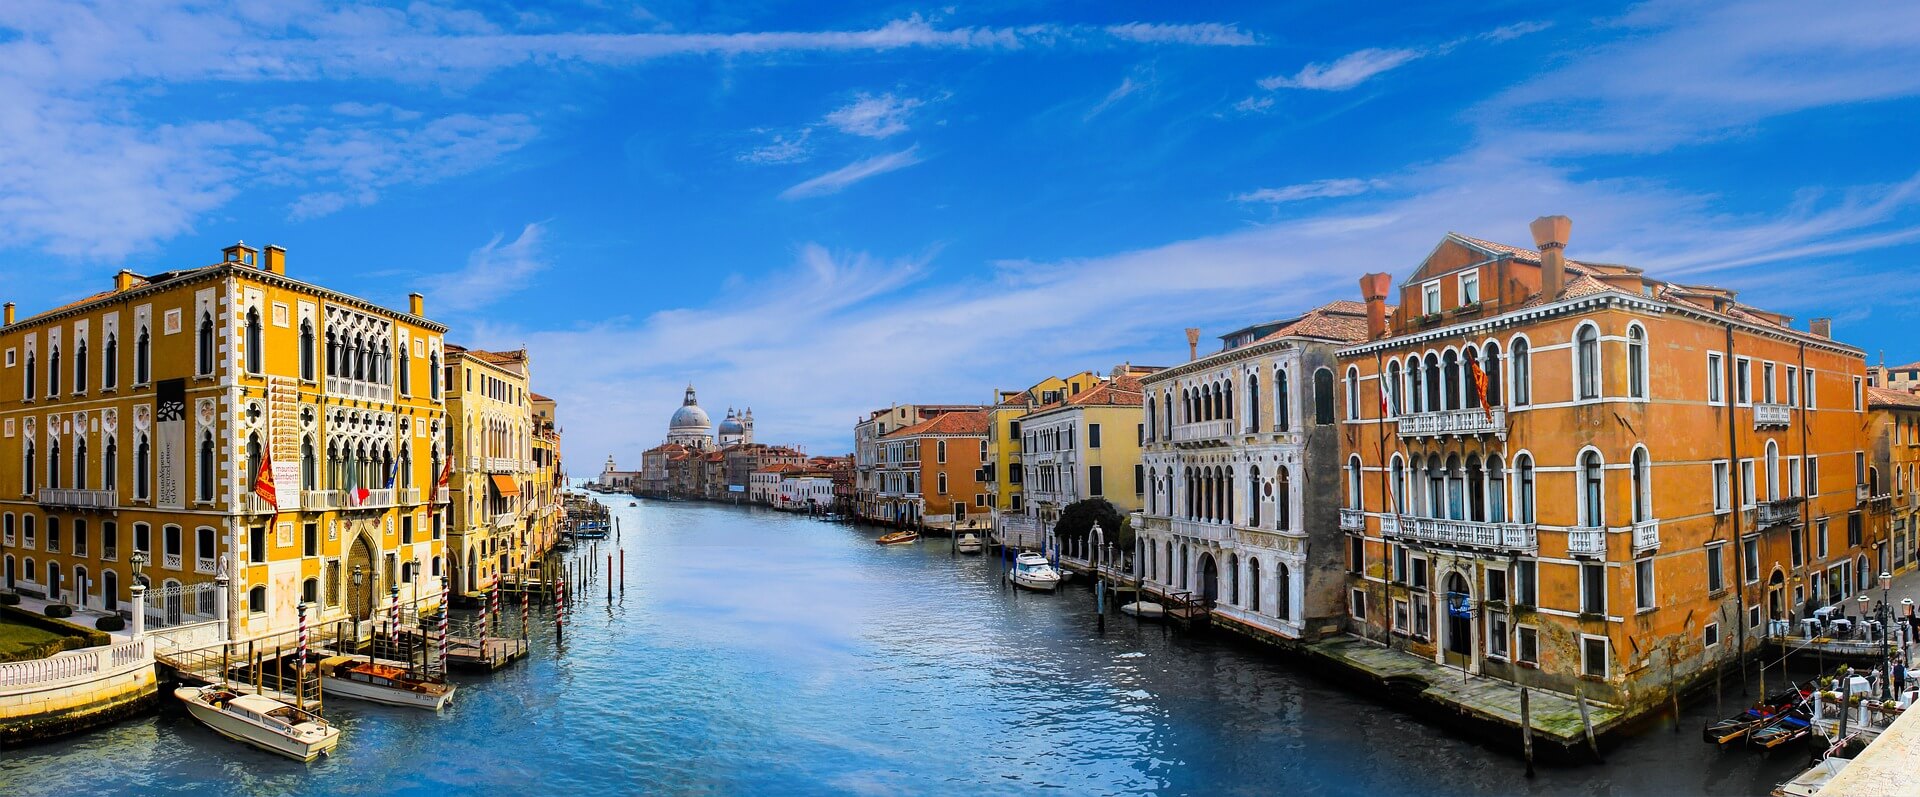 Agenzia Immobiliare Venezia - Canal Grande